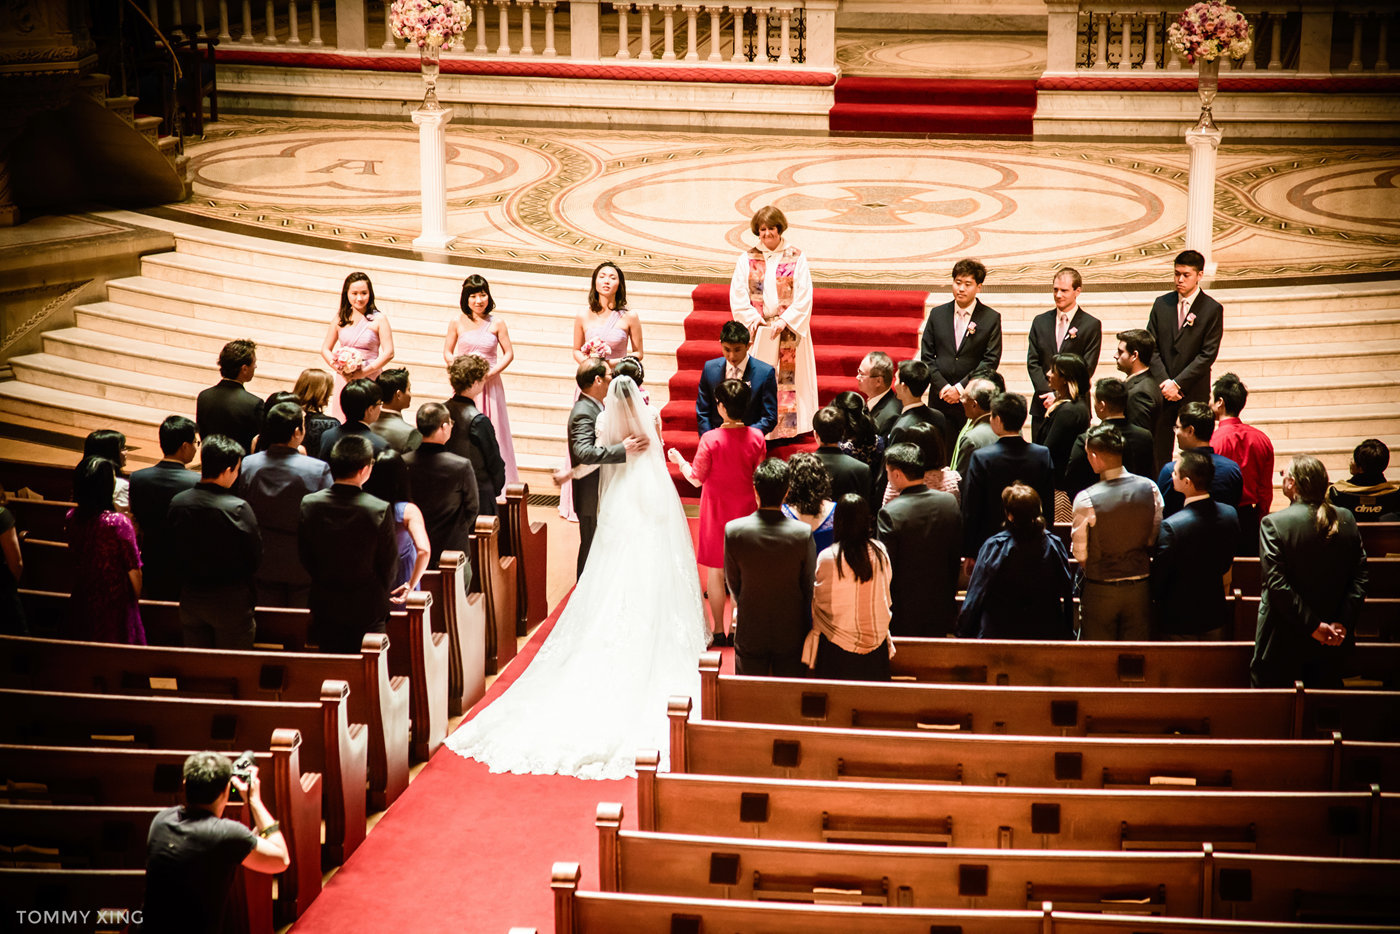 stanford memorial church wedding 旧金山湾区斯坦福教堂婚礼 Tommy Xing Photography 050.jpg